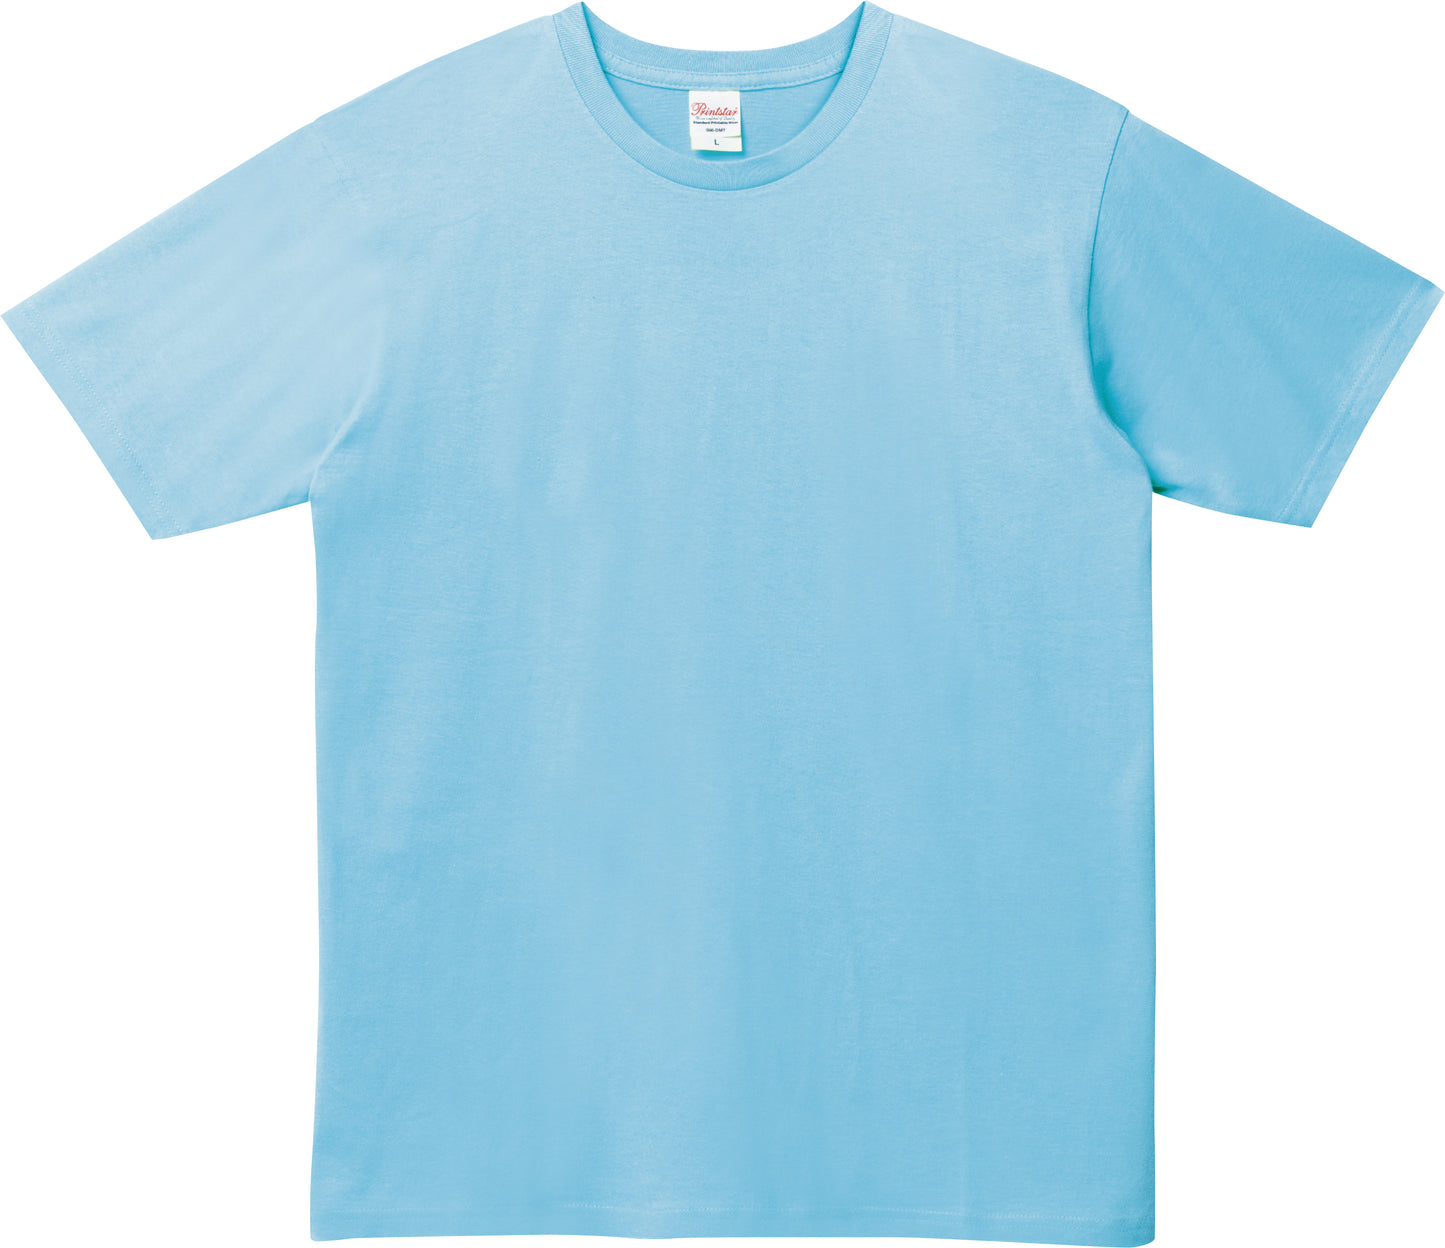 [Plus-1] 086-DMT 5.0oz Basic T-shirt Ladies M/L